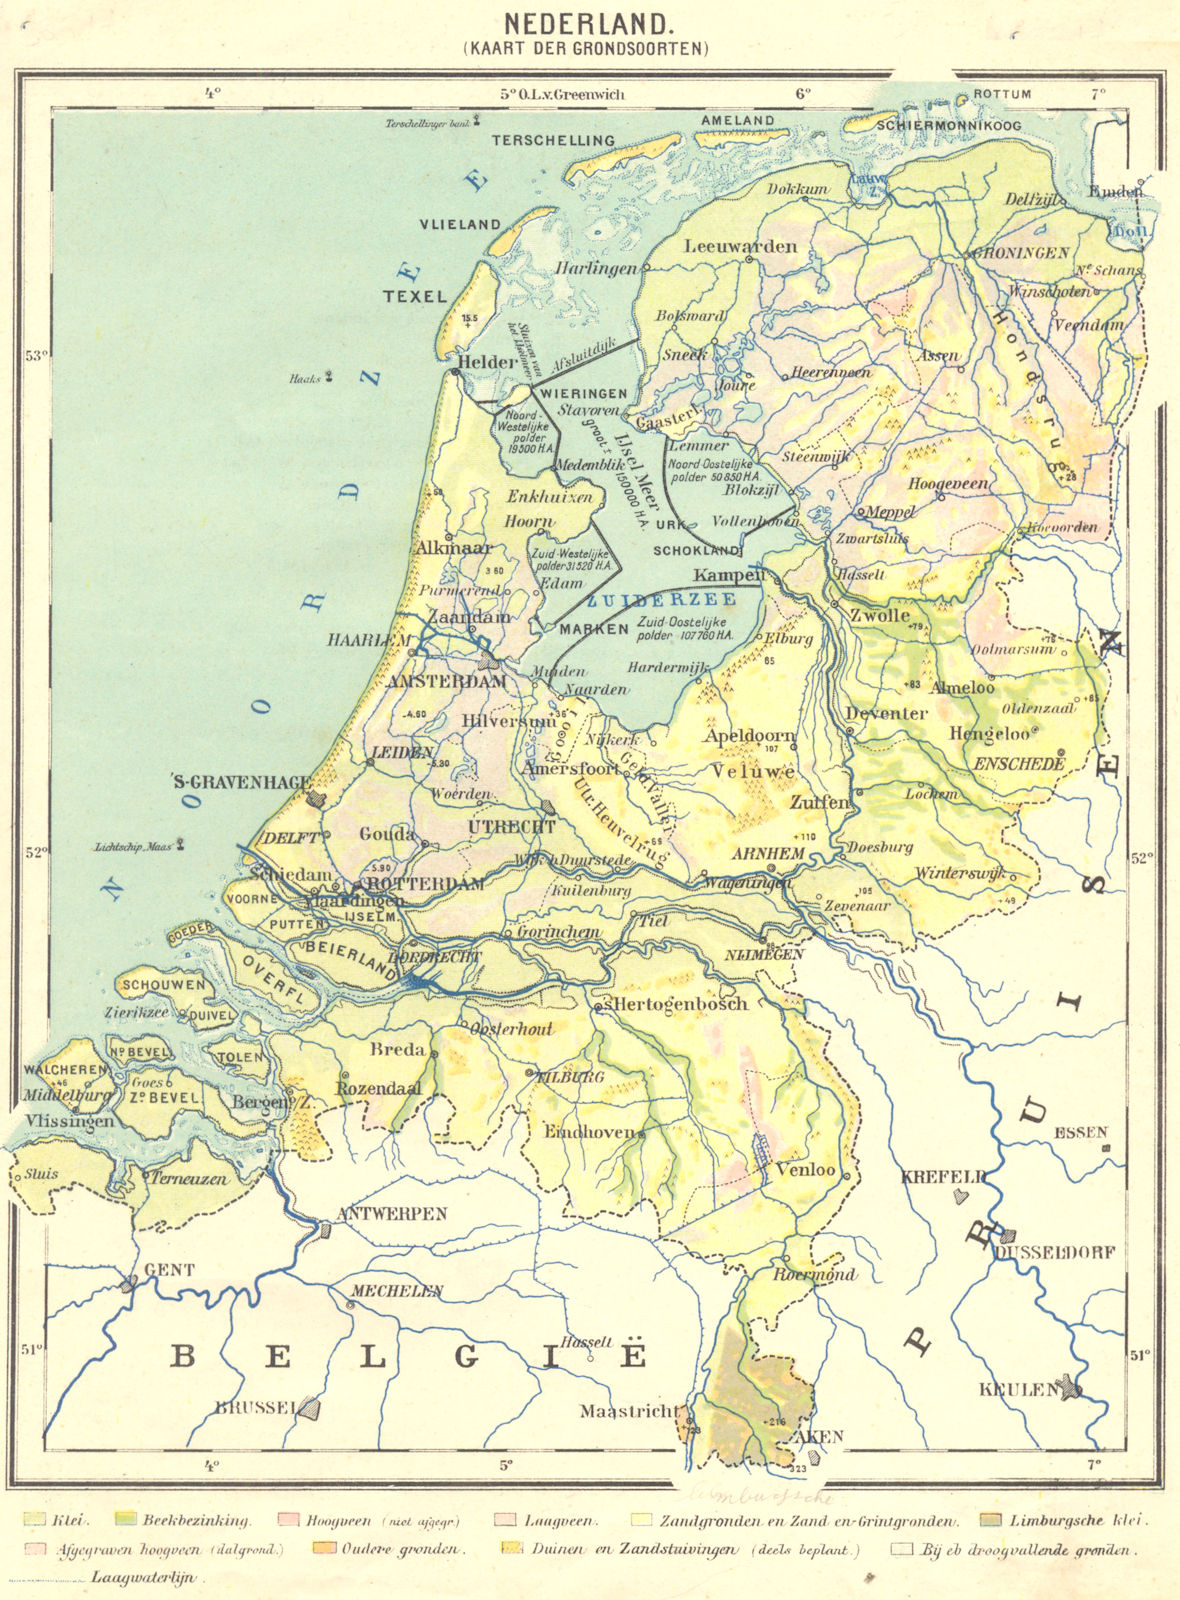 NETHERLANDS. Nederland;  (Kaarat der Grondsoorten)  1922 old vintage map chart